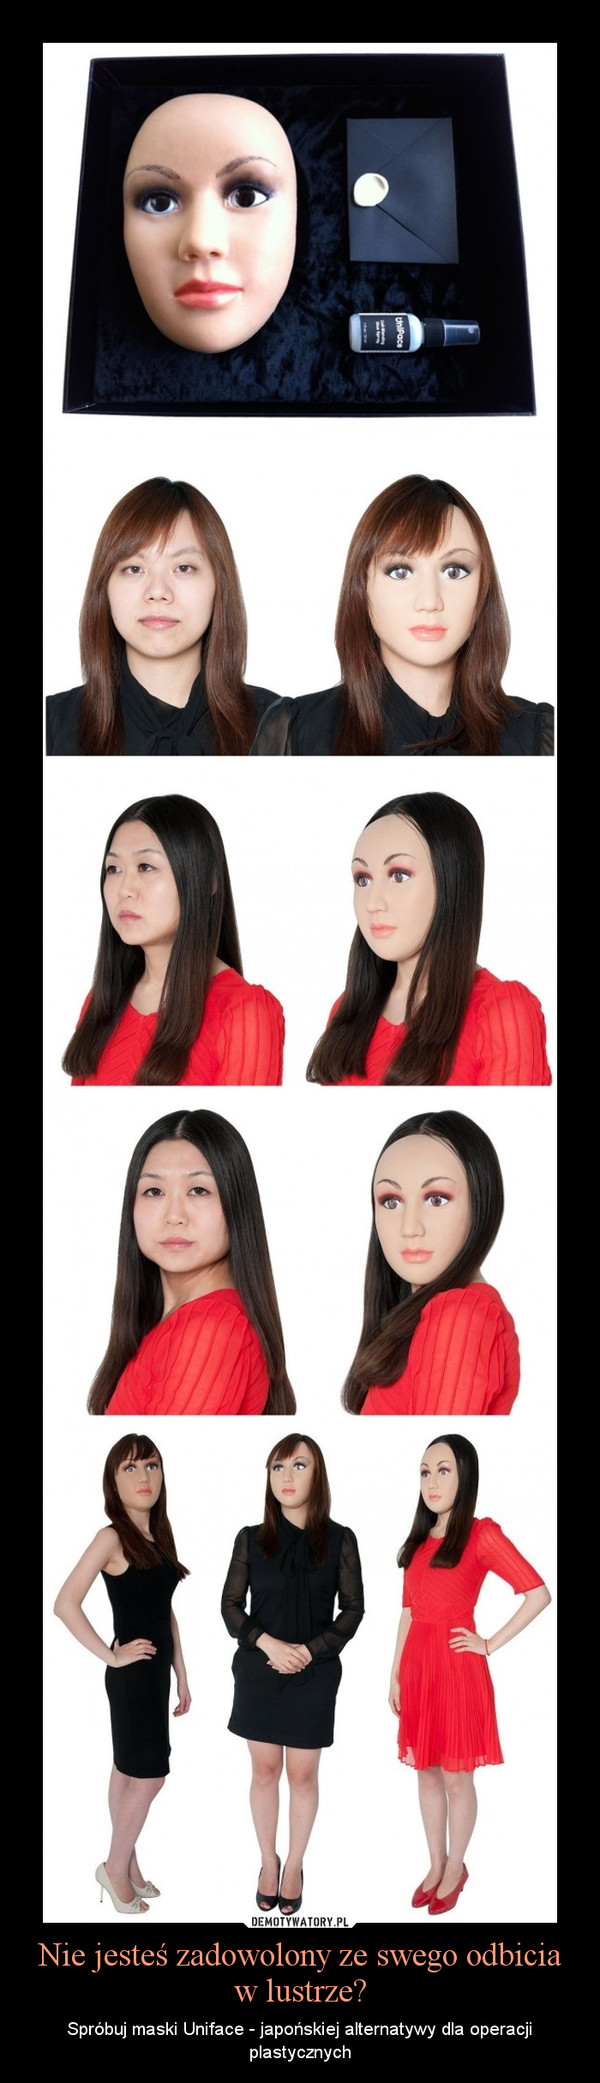 Nie jesteś zadowolony ze swego odbicia w lustrze? – Spróbuj maski Uniface - japońskiej alternatywy dla operacji plastycznych 